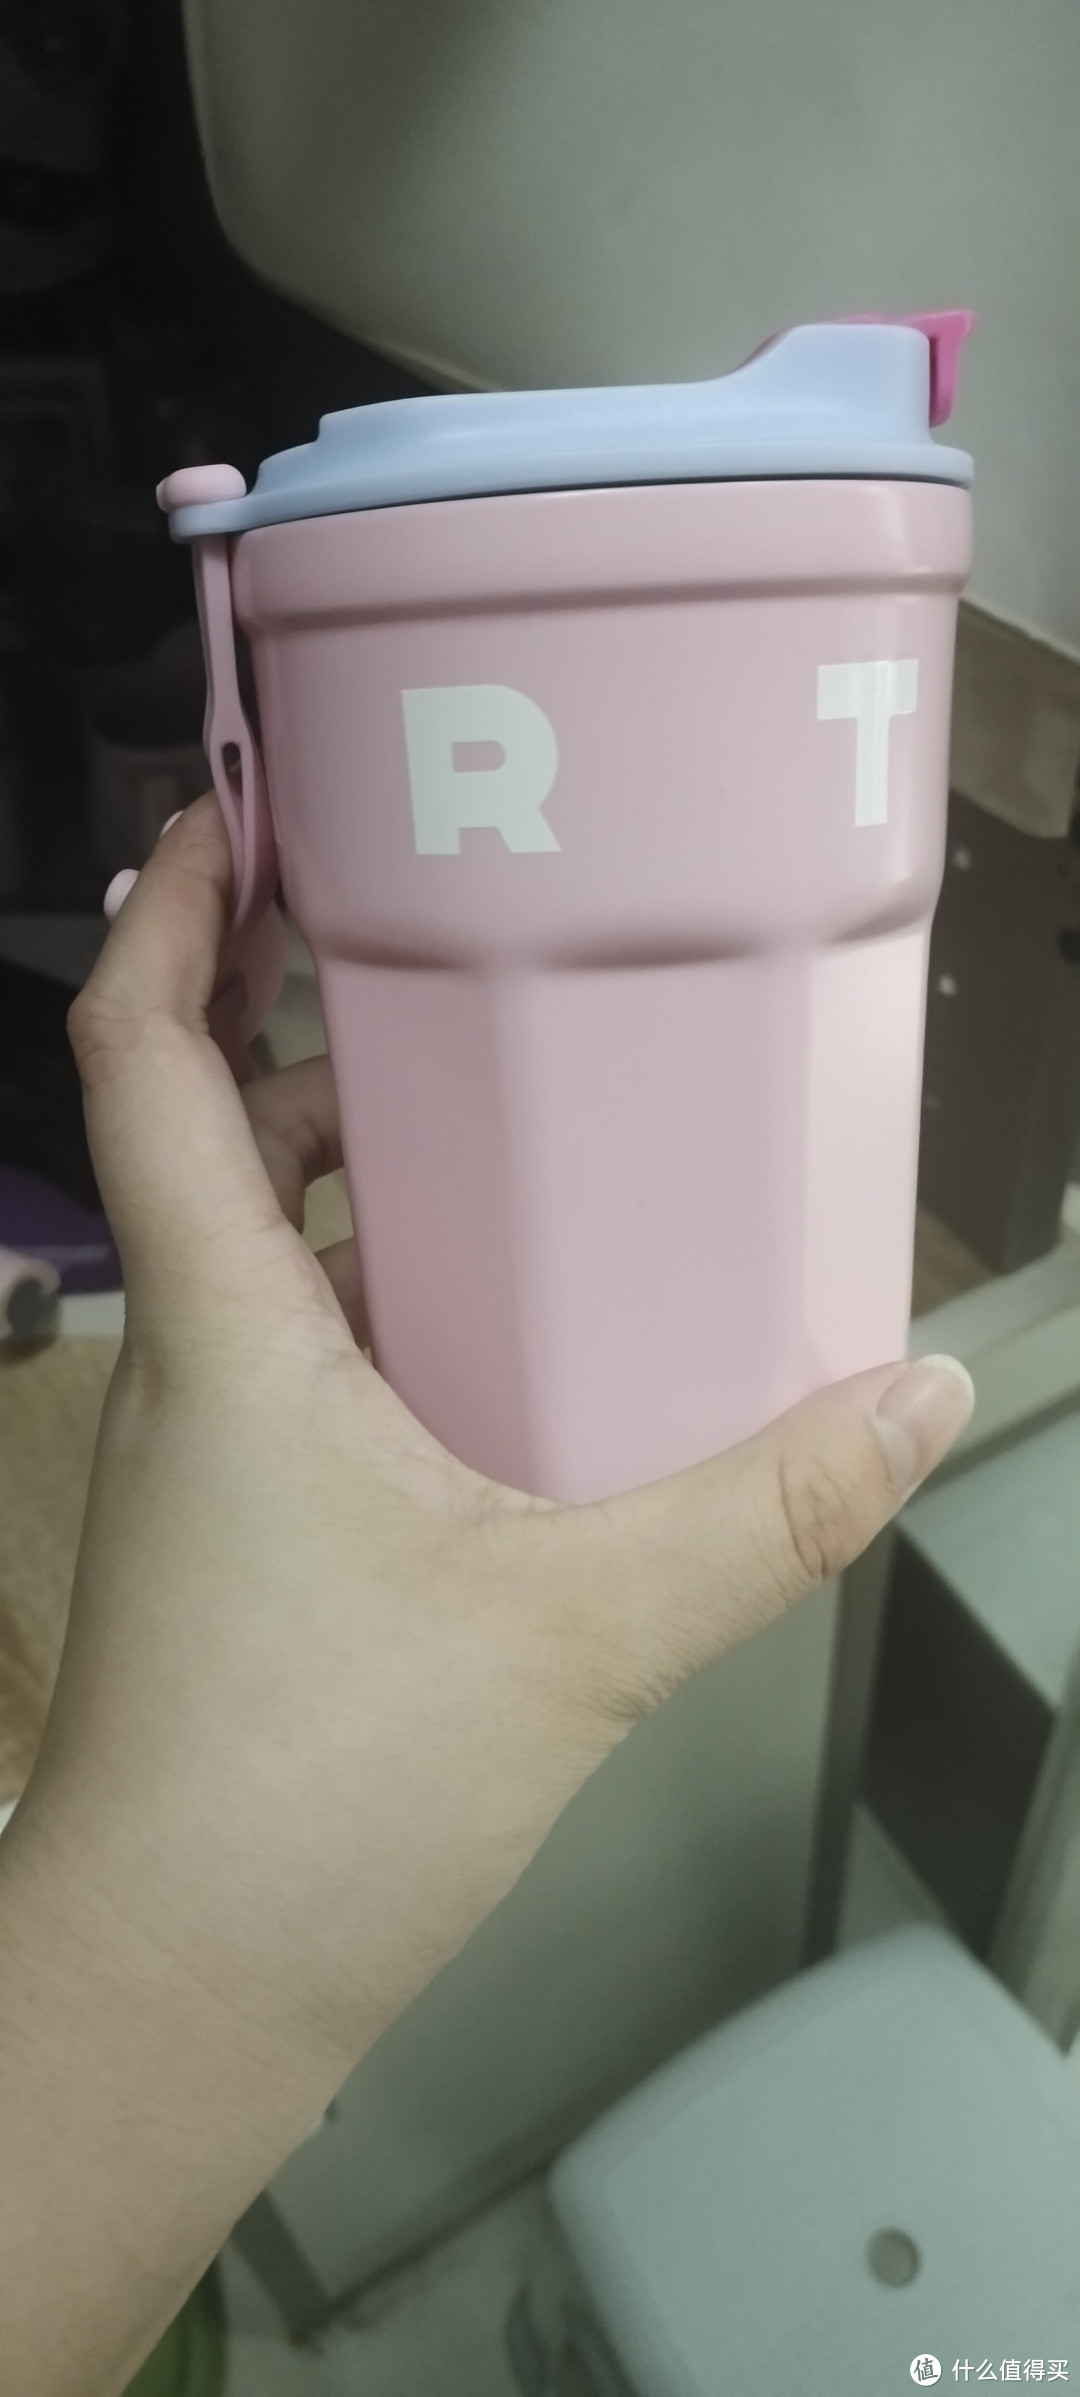 粉色的可爱杯子~因为一个水杯已经爱上喝水了，可爱又实用。